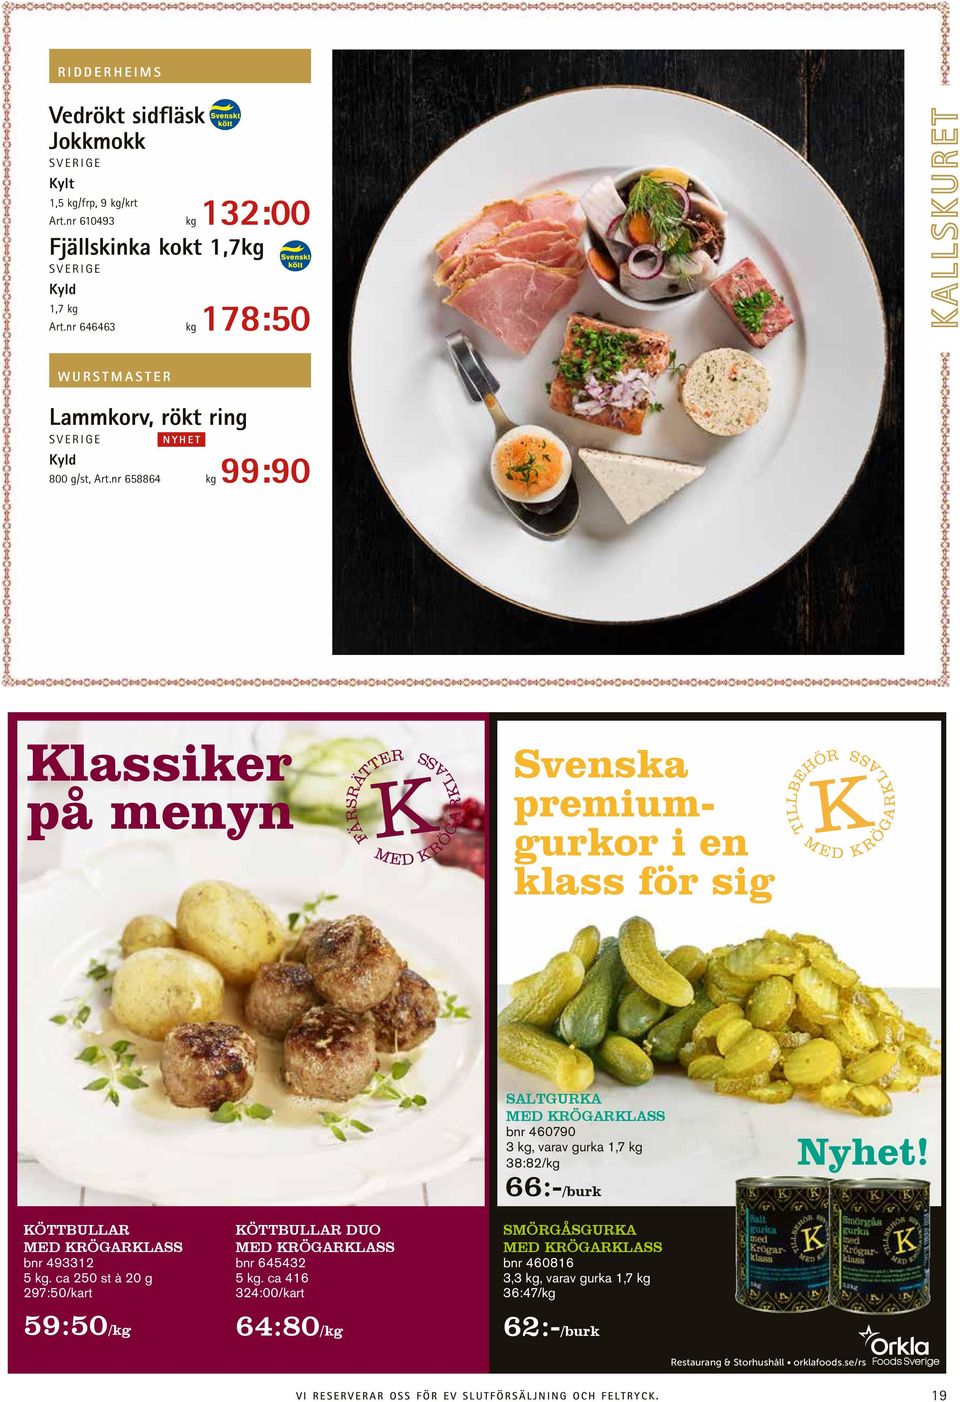 nr 658864 kg 99:90 Klassiker på menyn Svenska premiumgurkor i en klass för sig SALTGURKA MED KRÖGARKLASS bnr 460790 3 kg, varav gurka 1,7 kg 38:82/kg 66:-/burk Nyhet!